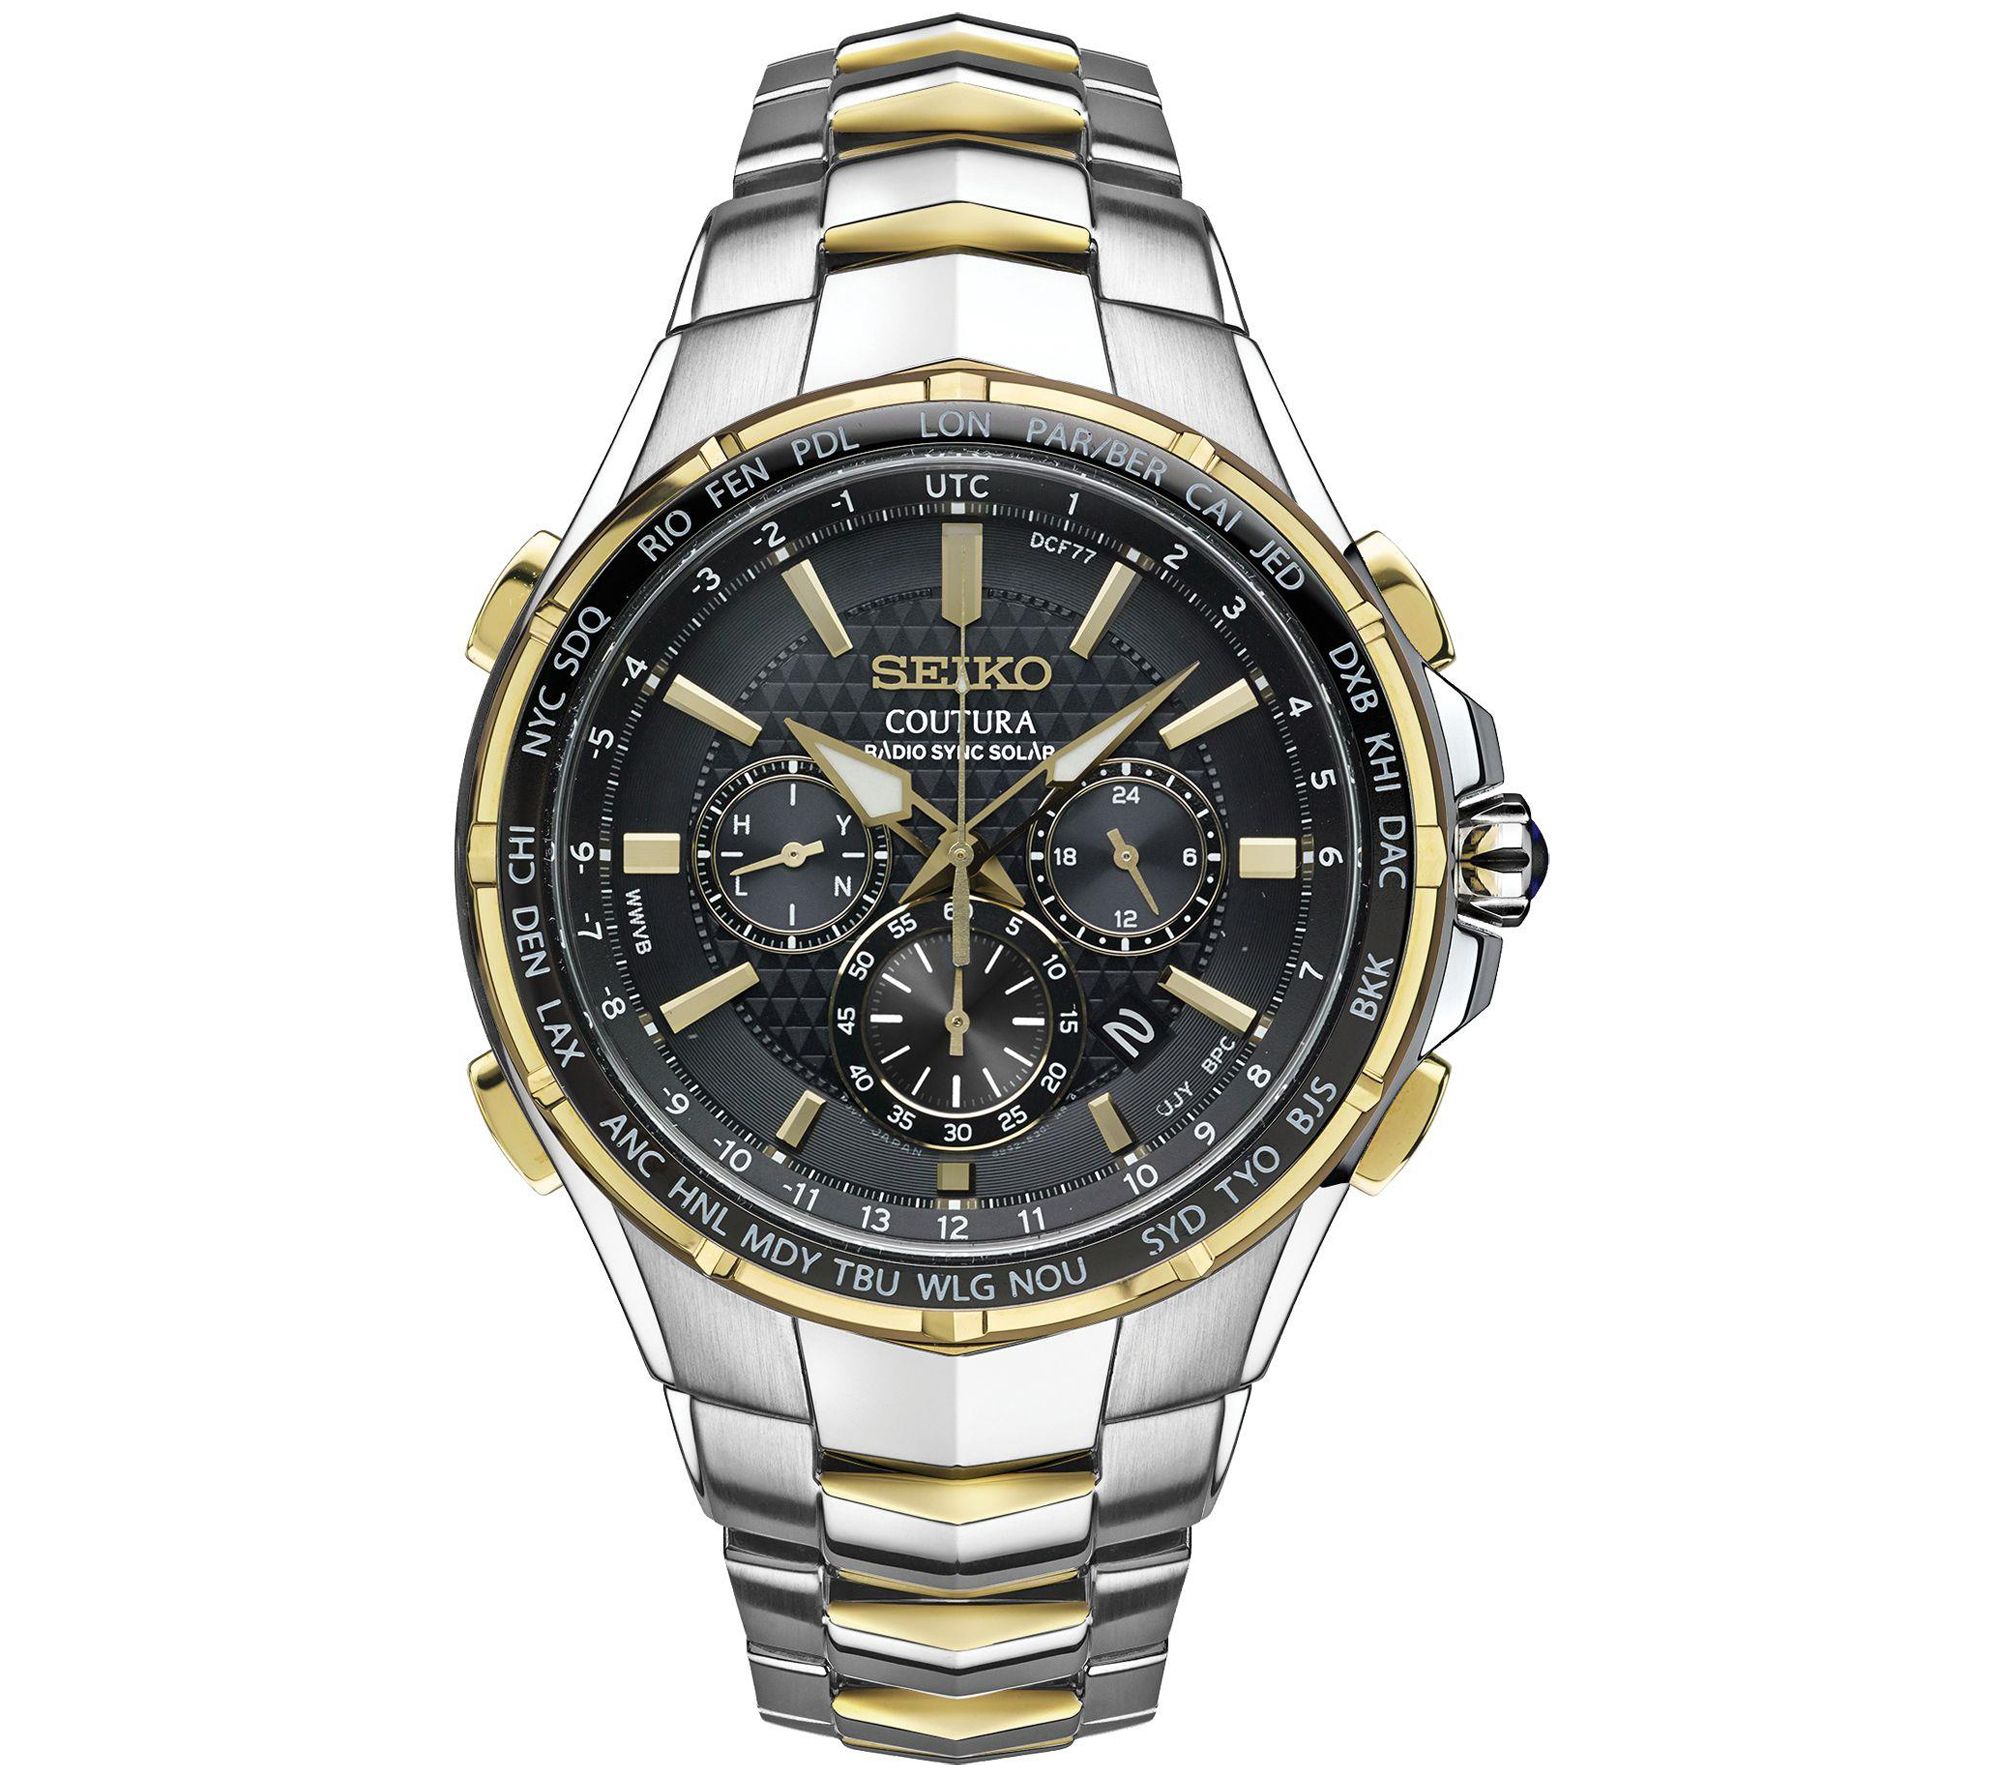 Seiko Men's Coutura Solar Two-Tone Stainless Black Dial Watch 